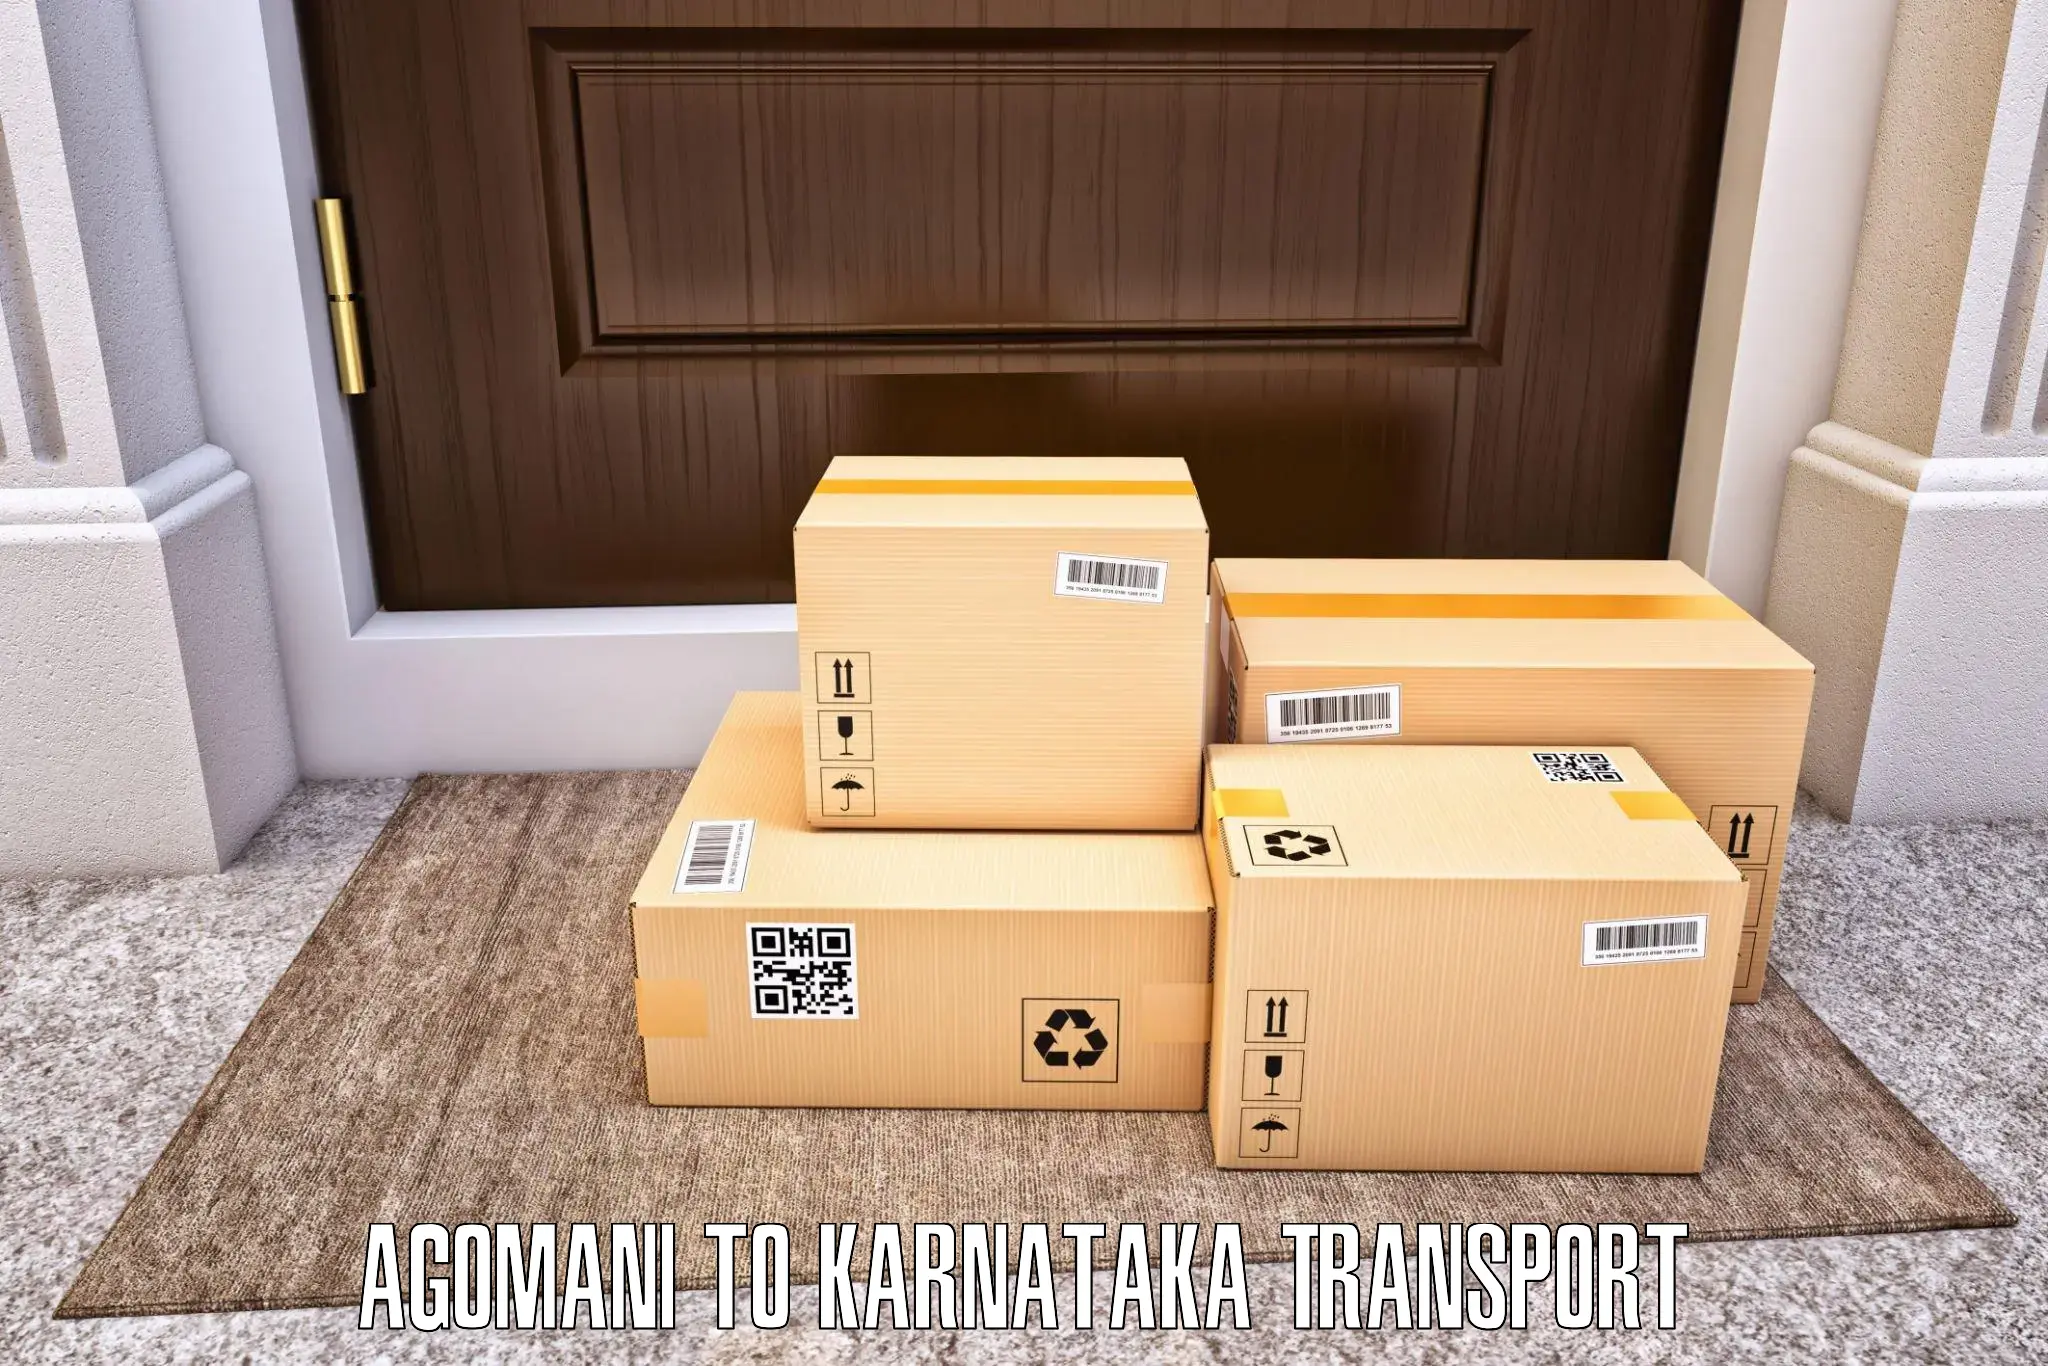 Cargo train transport services Agomani to Kalaburagi